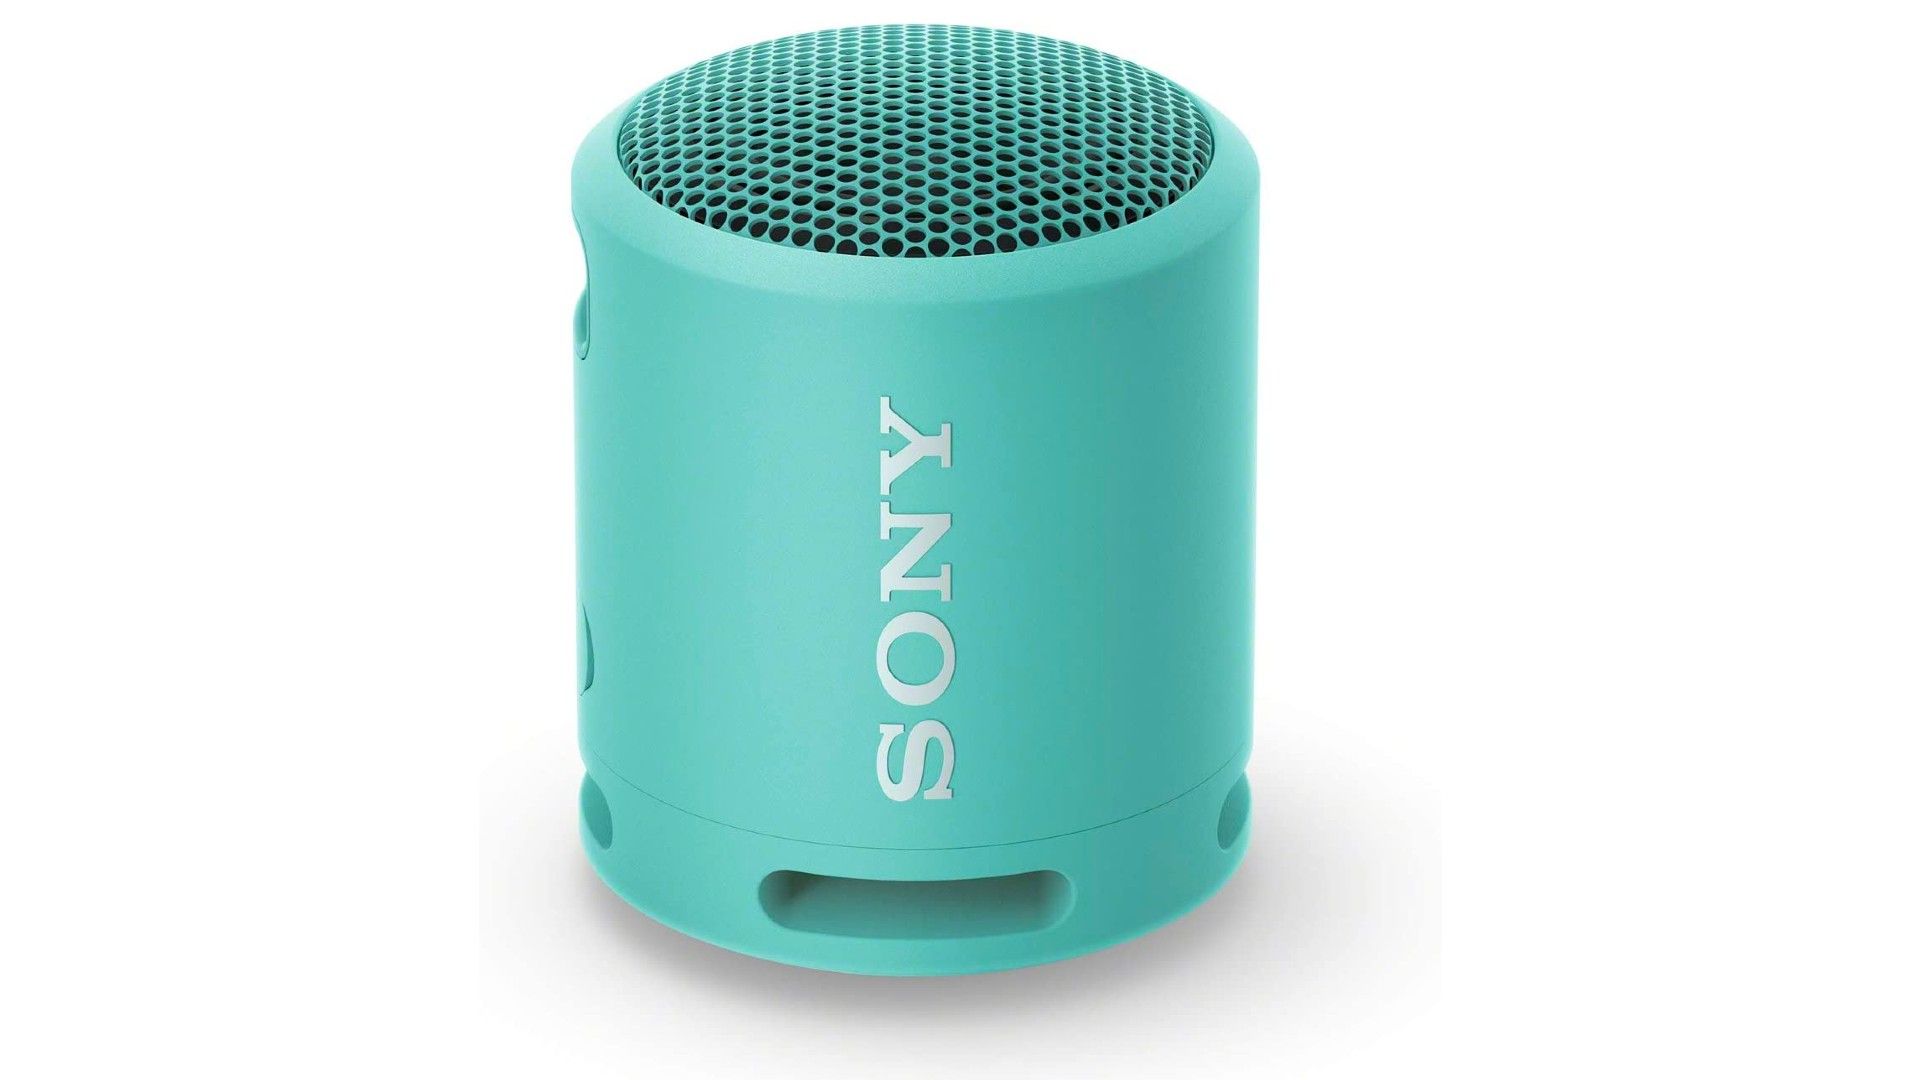 Alto-falante portátil Sony SRS-XB13